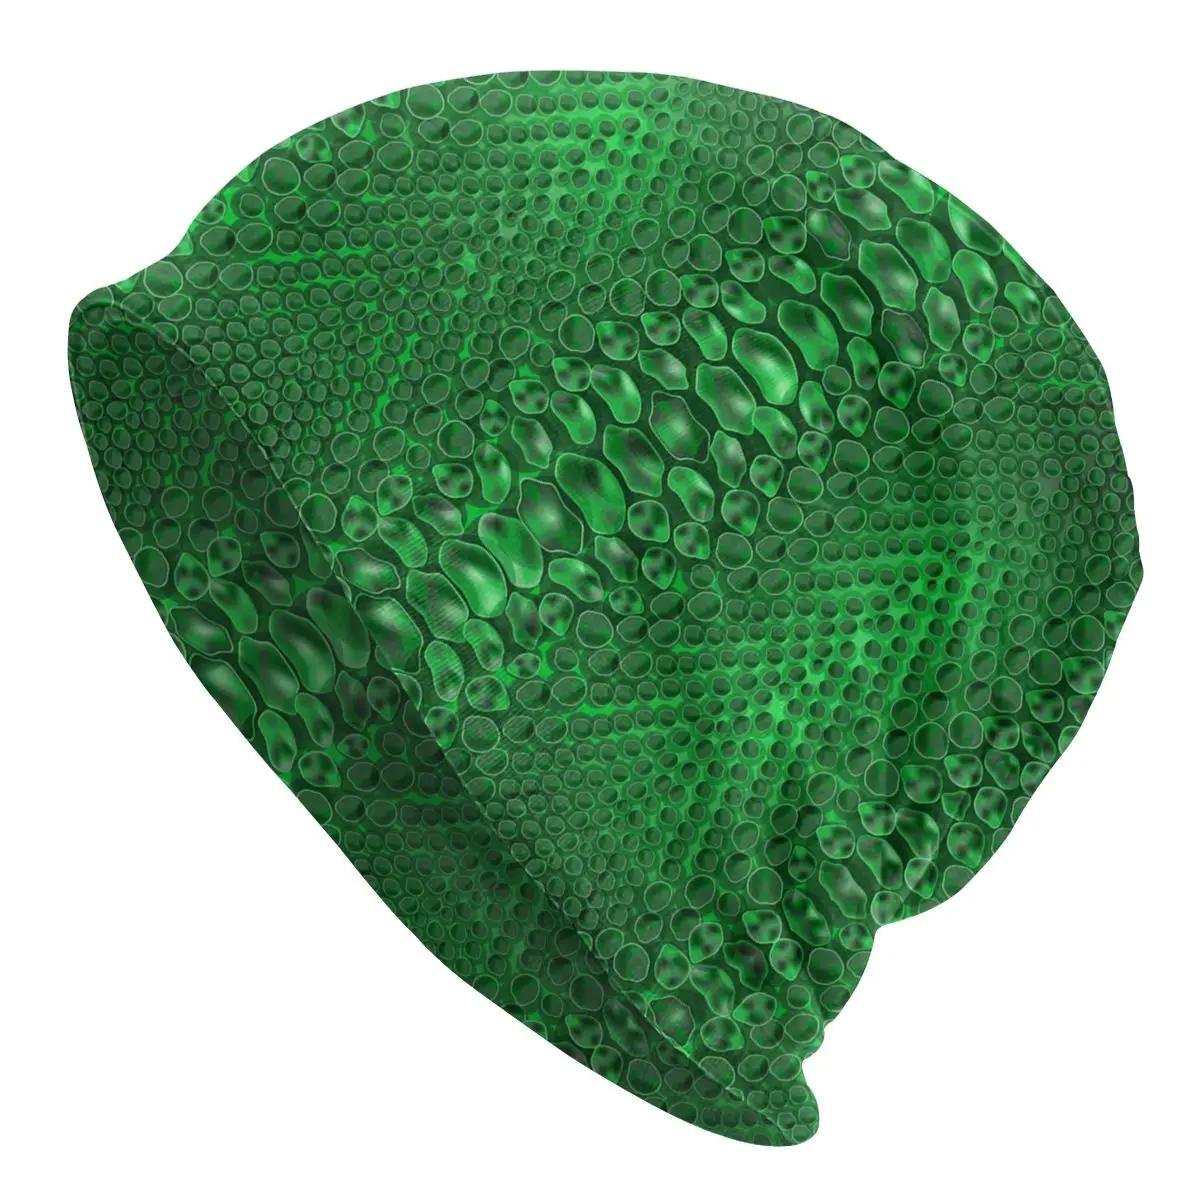 

Green Snake Skin Print Beanie Bonnet Knit Hats Men Women Cool Unisex Snakeskin Texture Warm Winter Skullies Beanies Cap